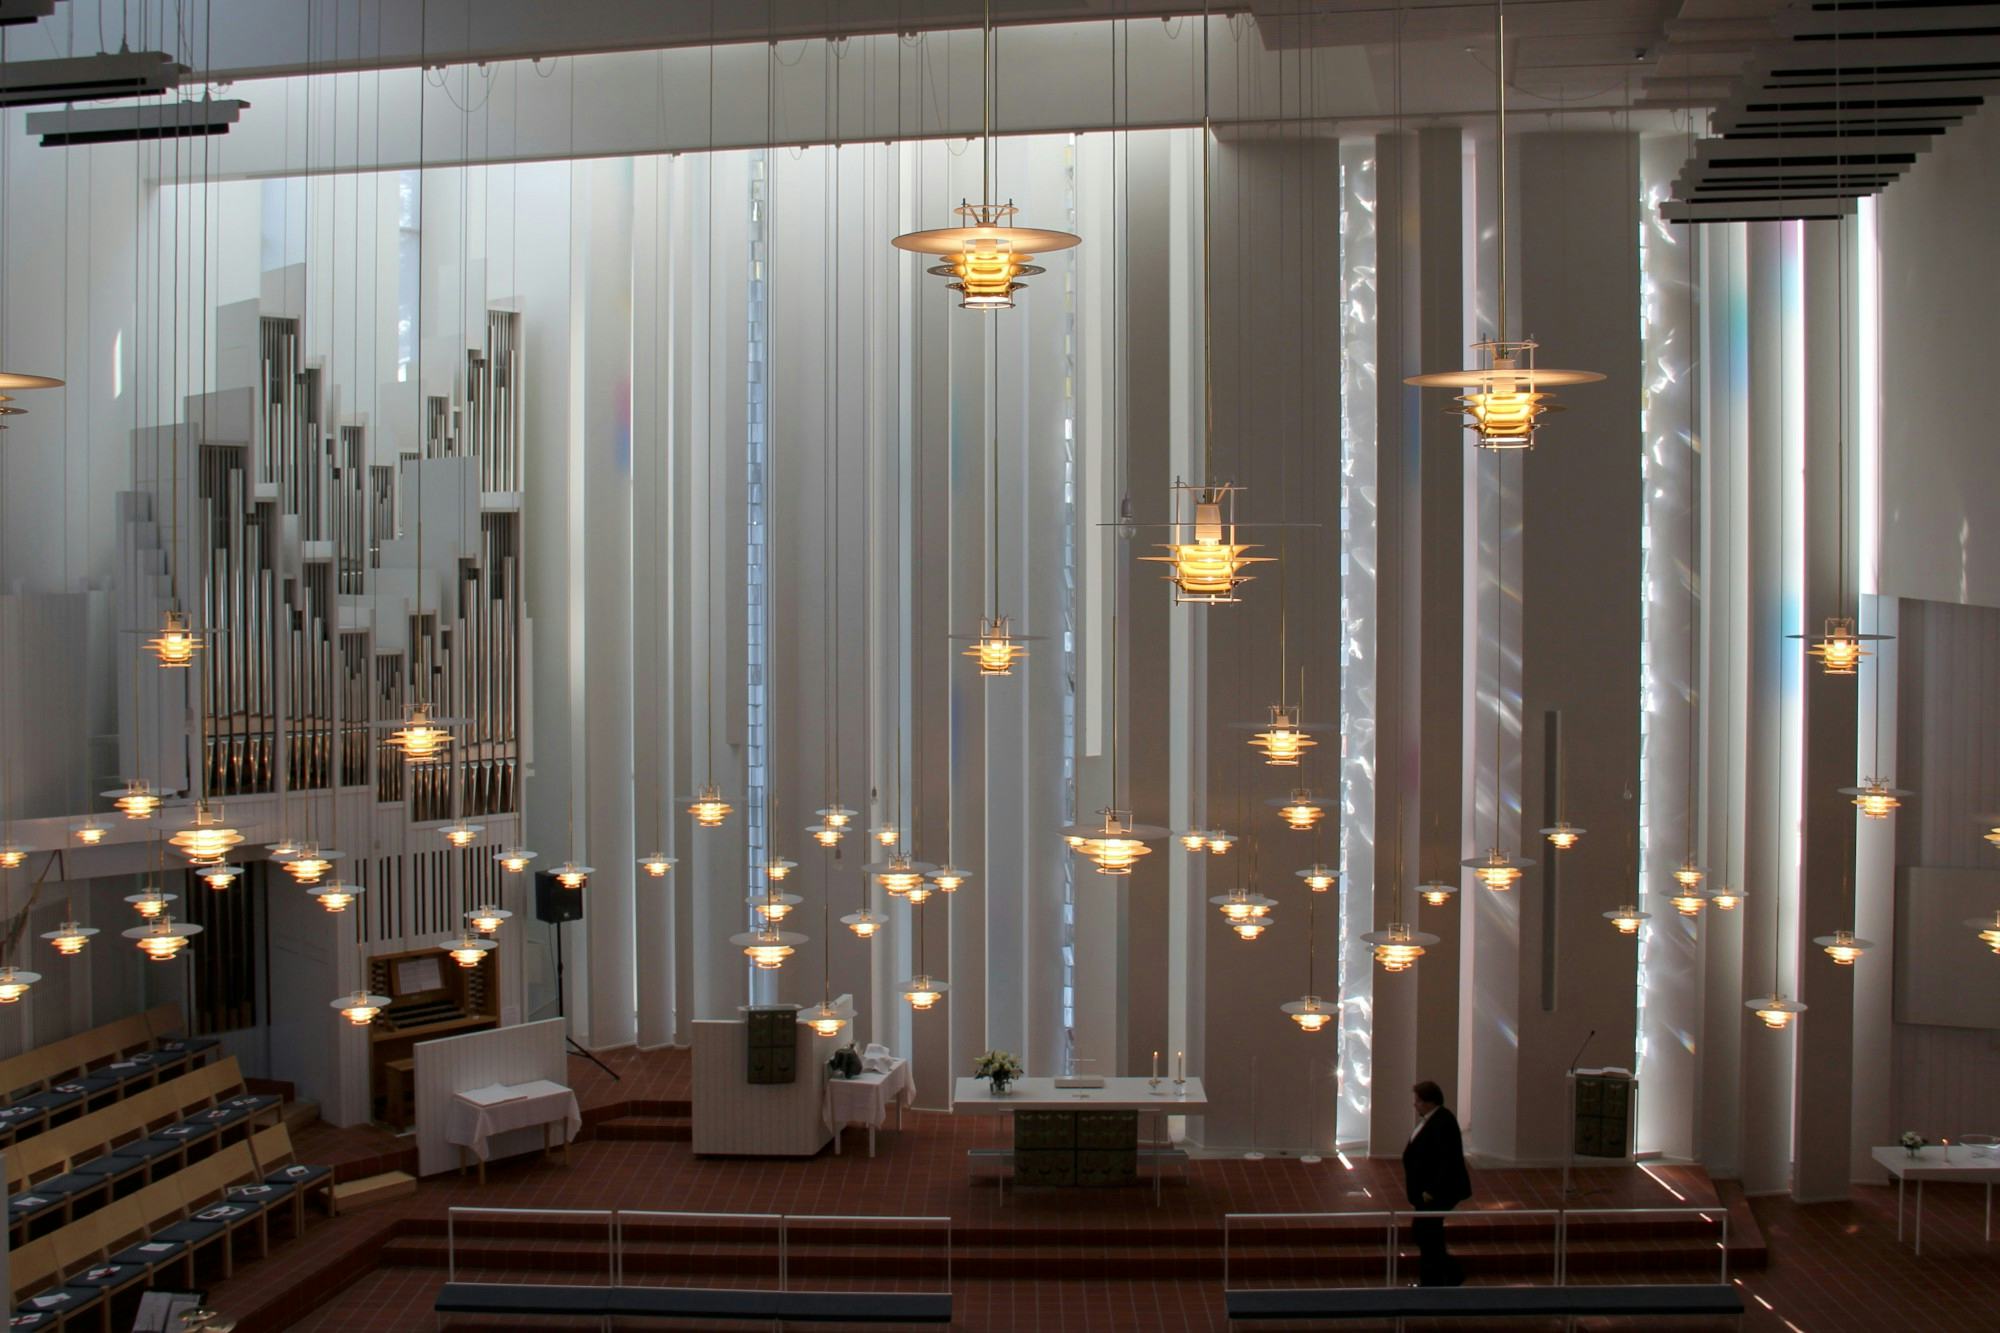 Interieur Hyvän Paimenen Kerk (2002) in Helsinki van Juha Leiviskä 